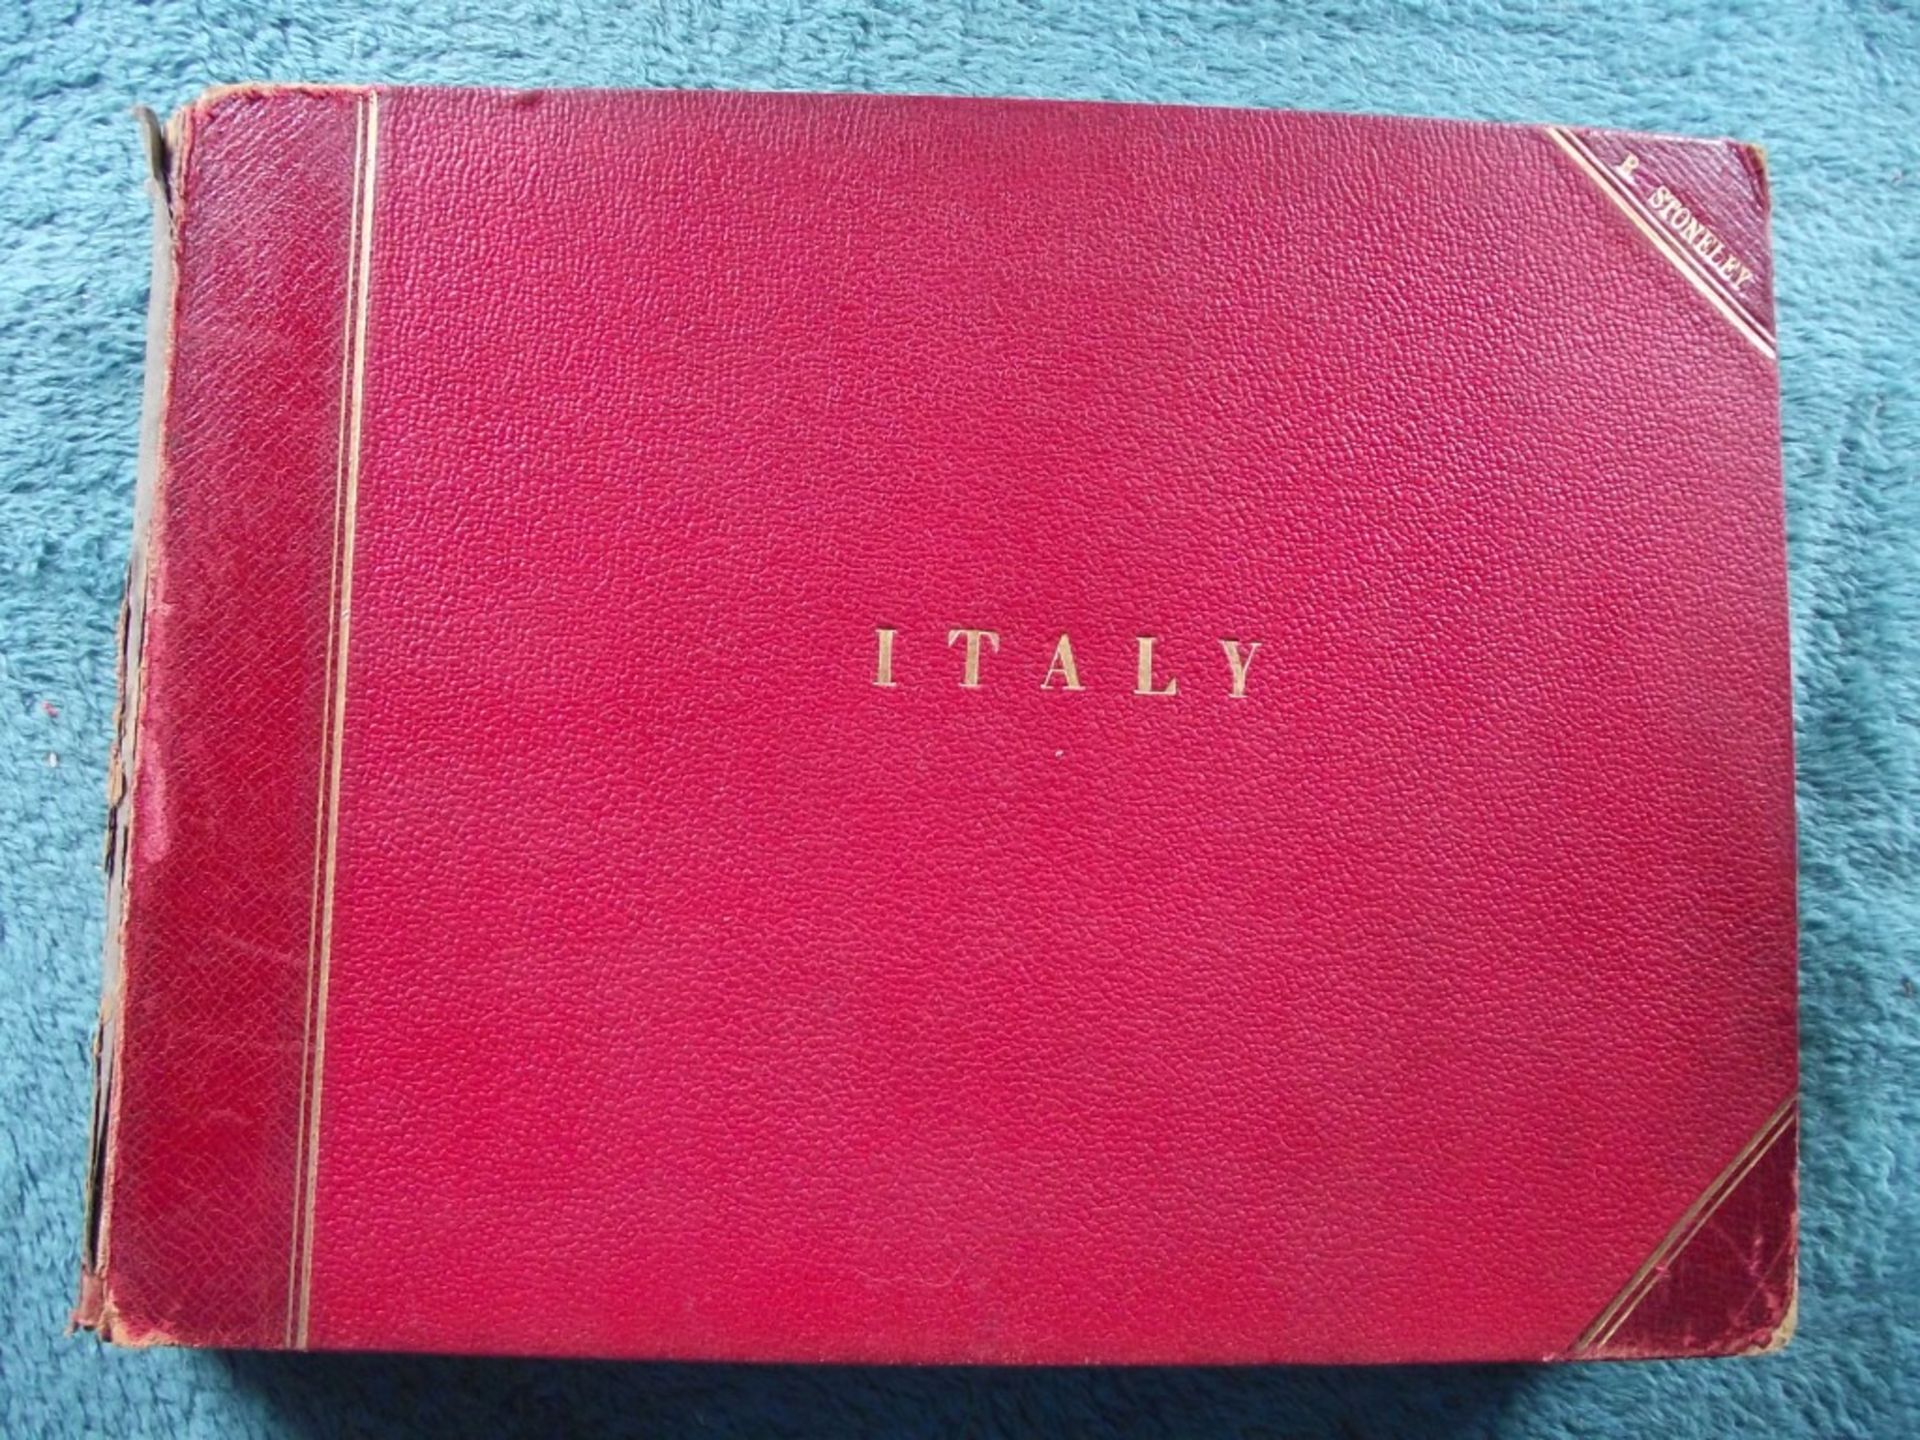 19th Century Album of Views of Italy - 33 Sepia images - Circa 1896